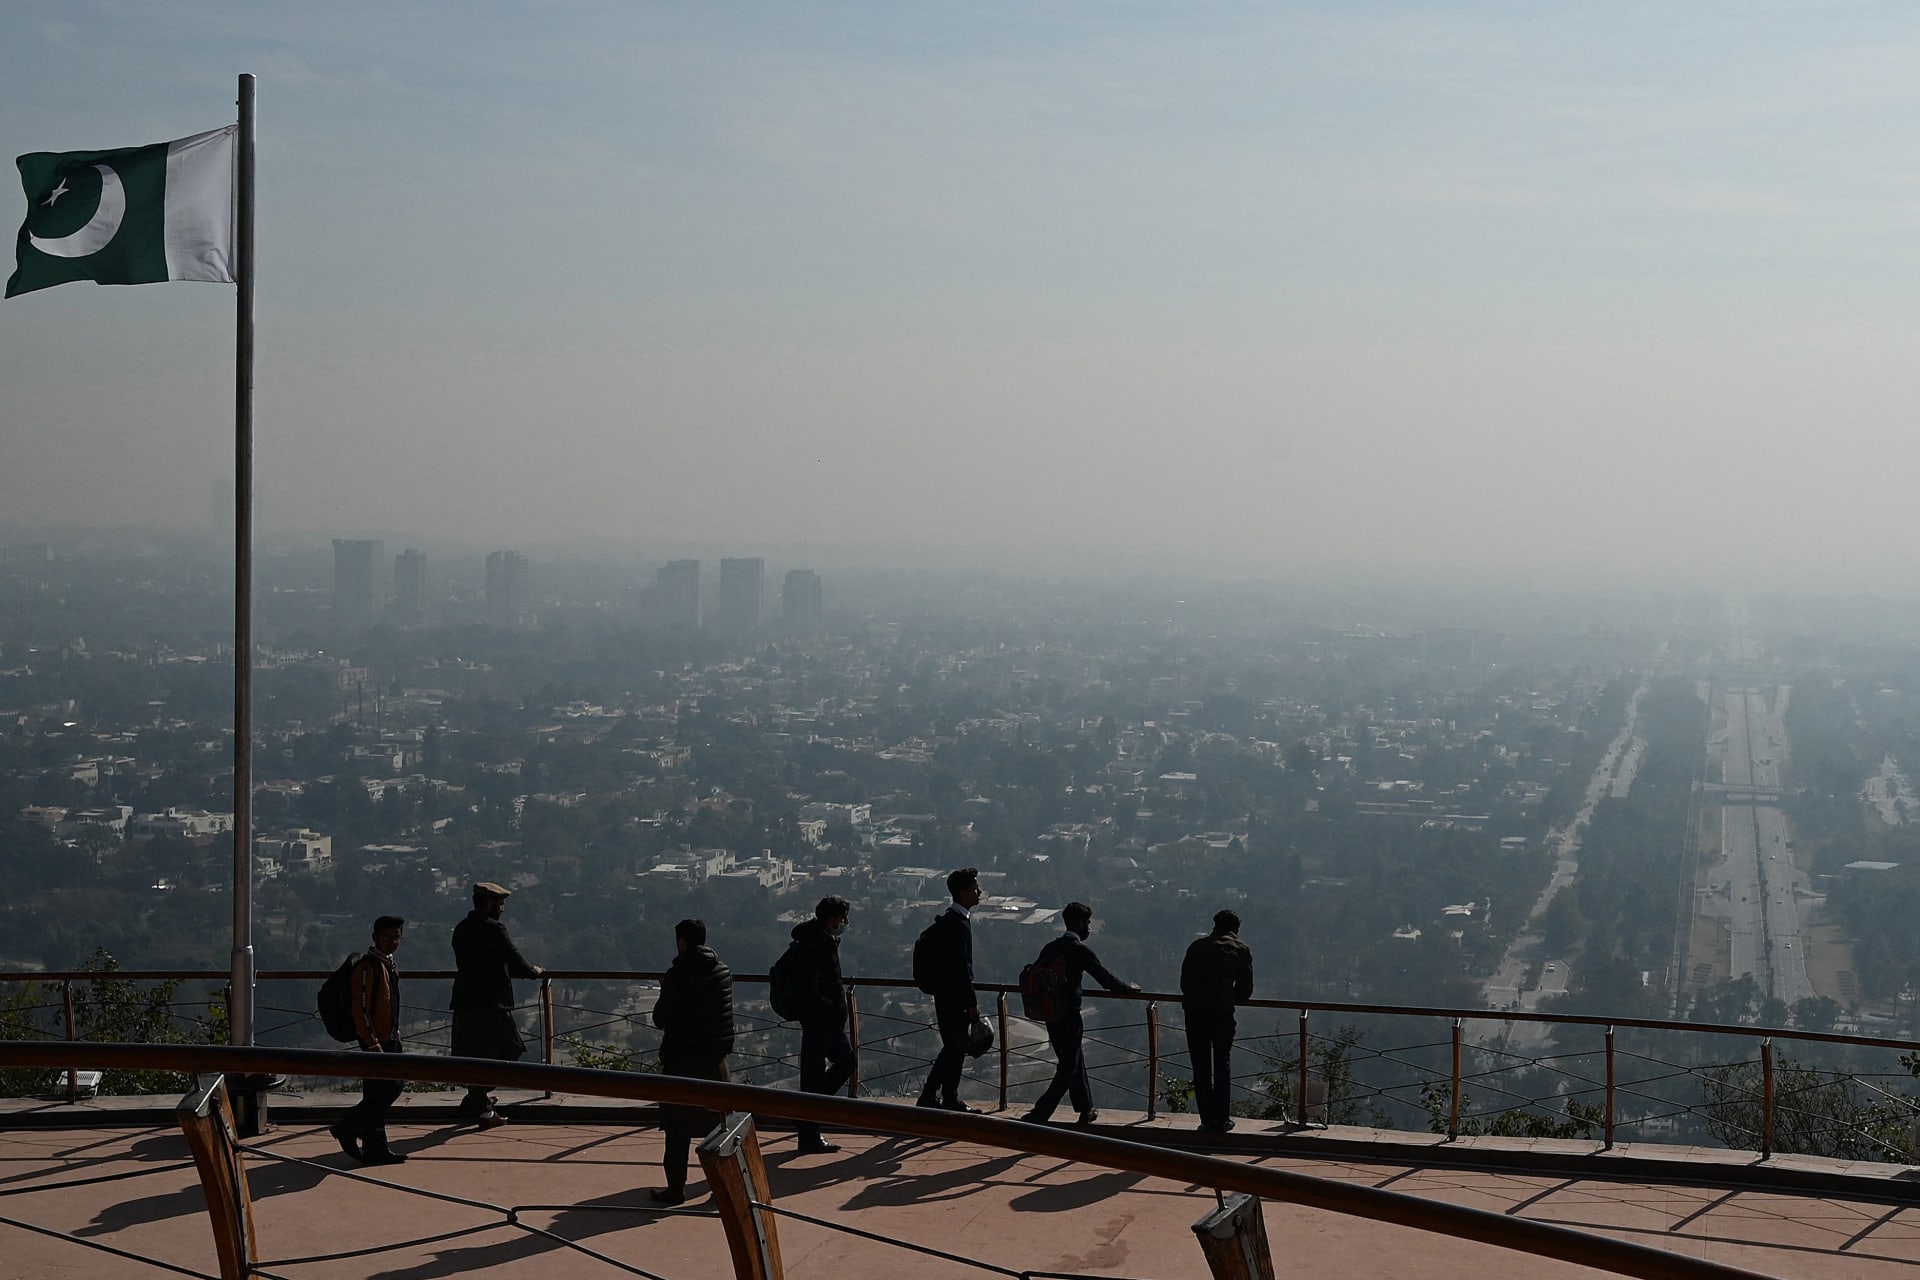 أسوأ وأفضل الأماكن من حيث تلوث الهواء في العالم لعام 2021.. ما هي؟